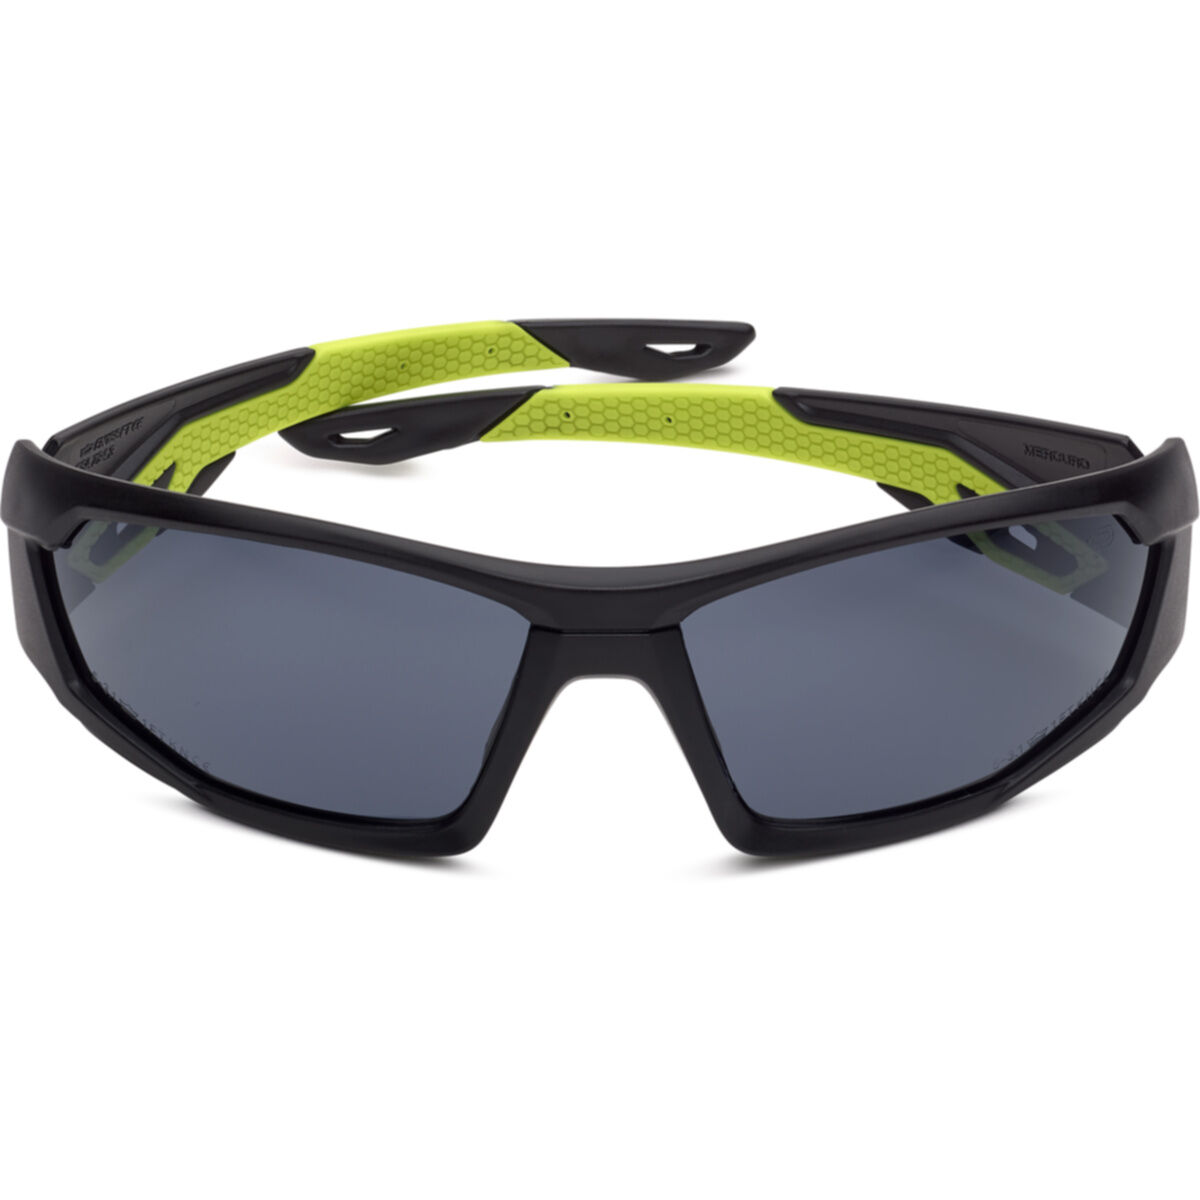 Bolle MERCURO Safety Glasses Stylish Wrap Around Frame Maximum Comfort 